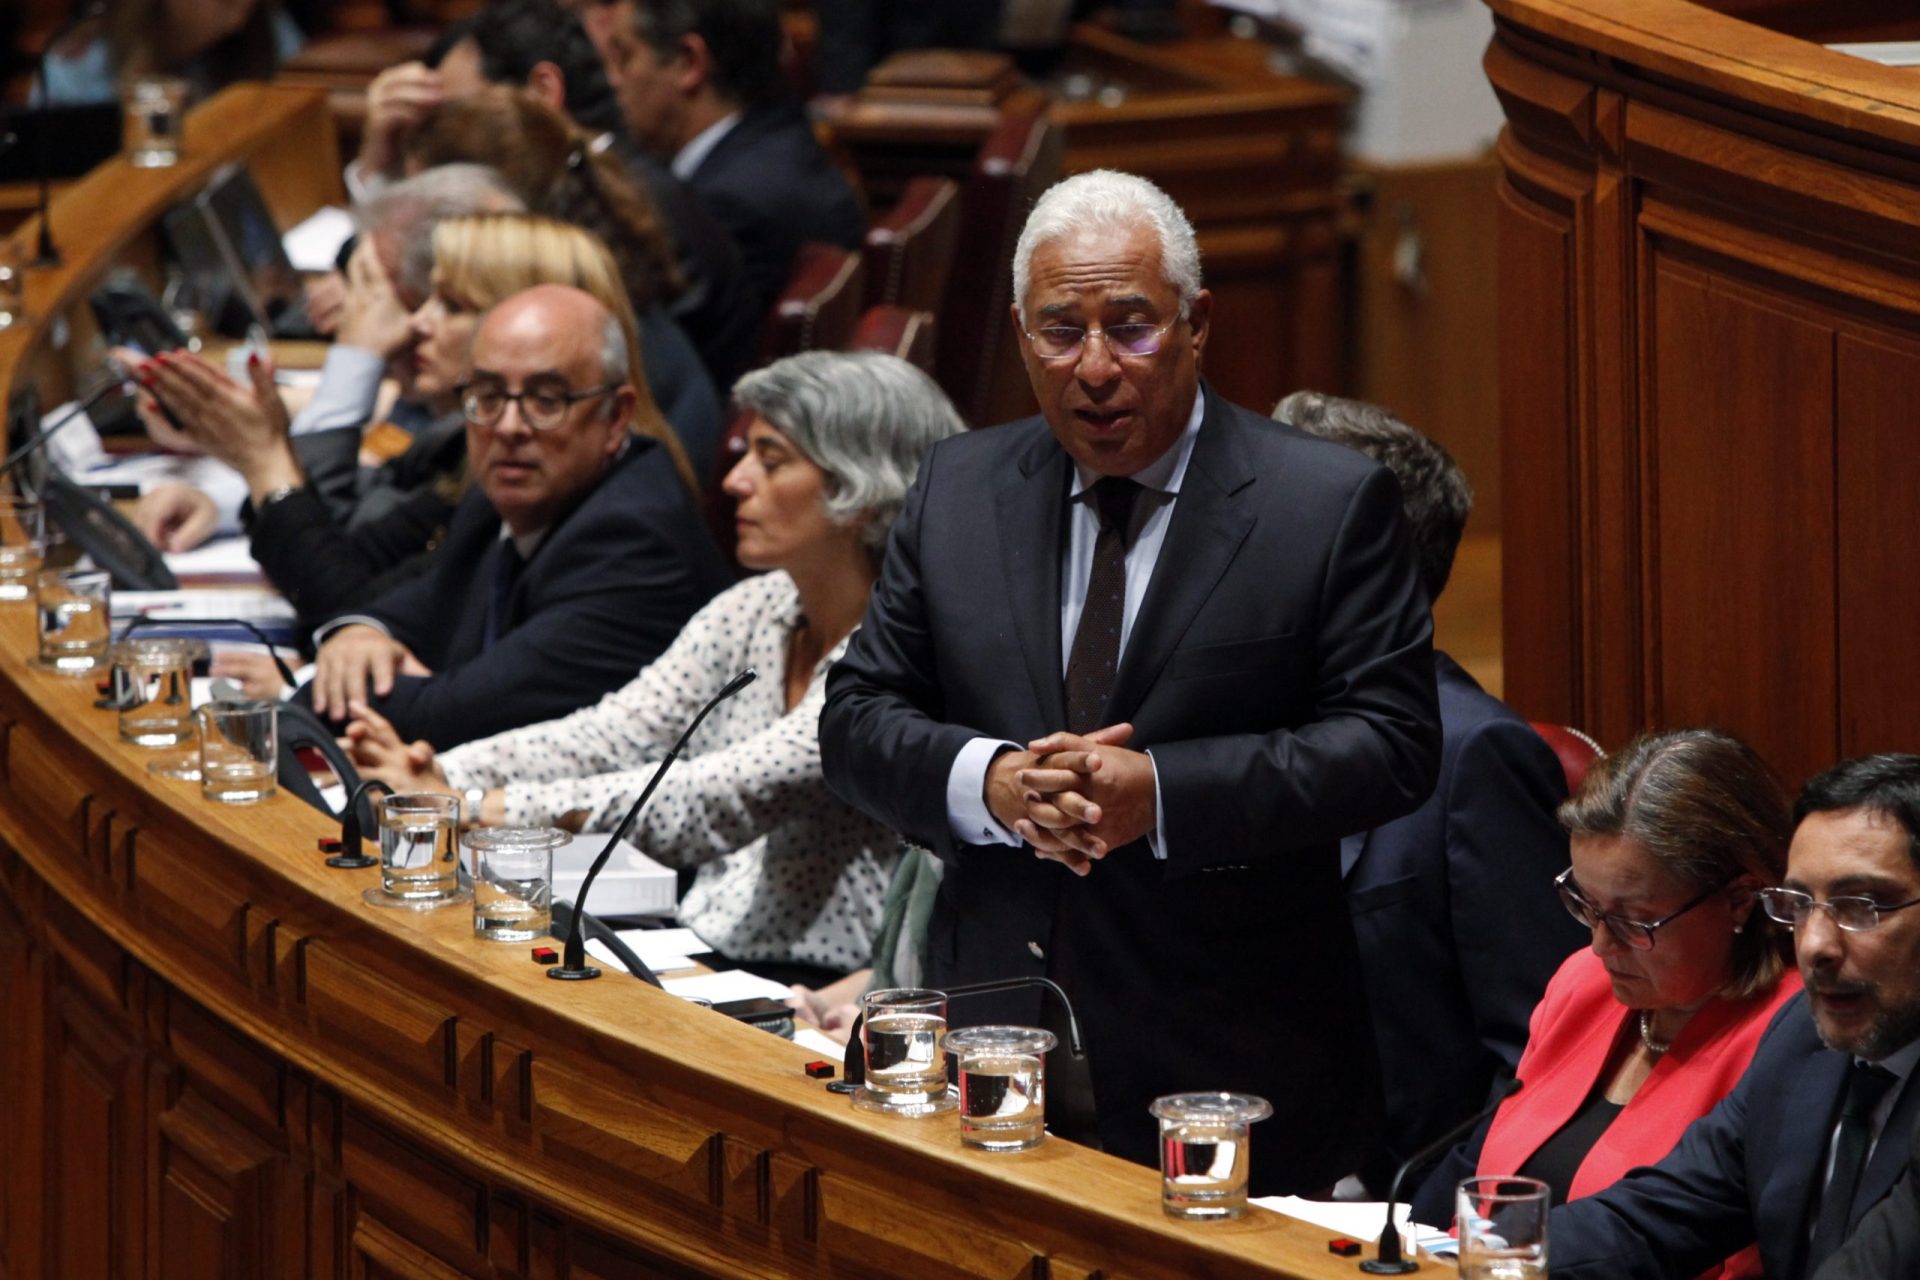 Táxis: Costa remete para o Parlamento alteração à lei